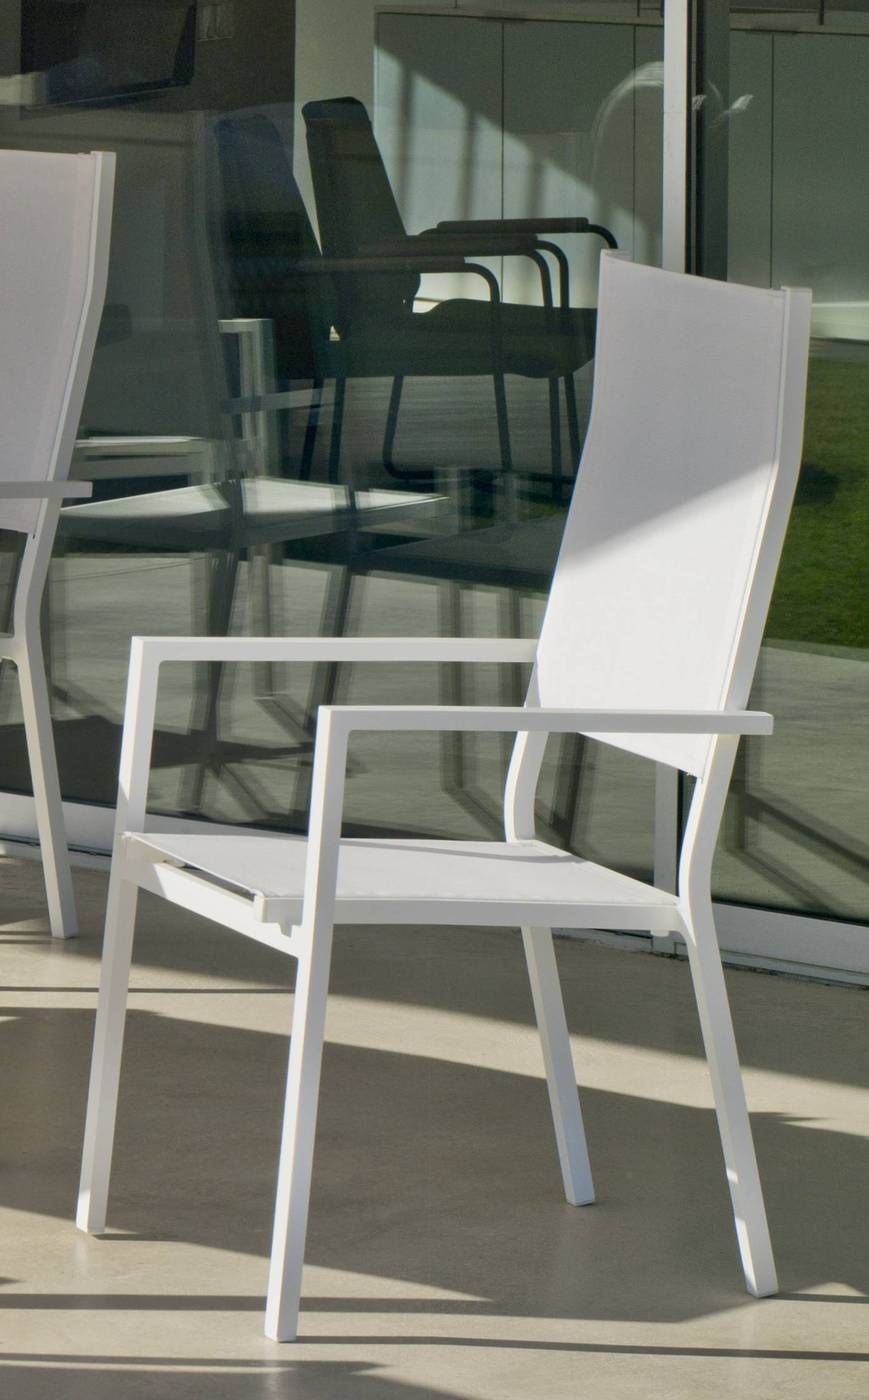 Set Góndola-160-6 Janeiro - Conjunto de aluminio color antracita: Mesa rectangular con tablero mosaico de 160 cm + 6 sillones altos de textilen.